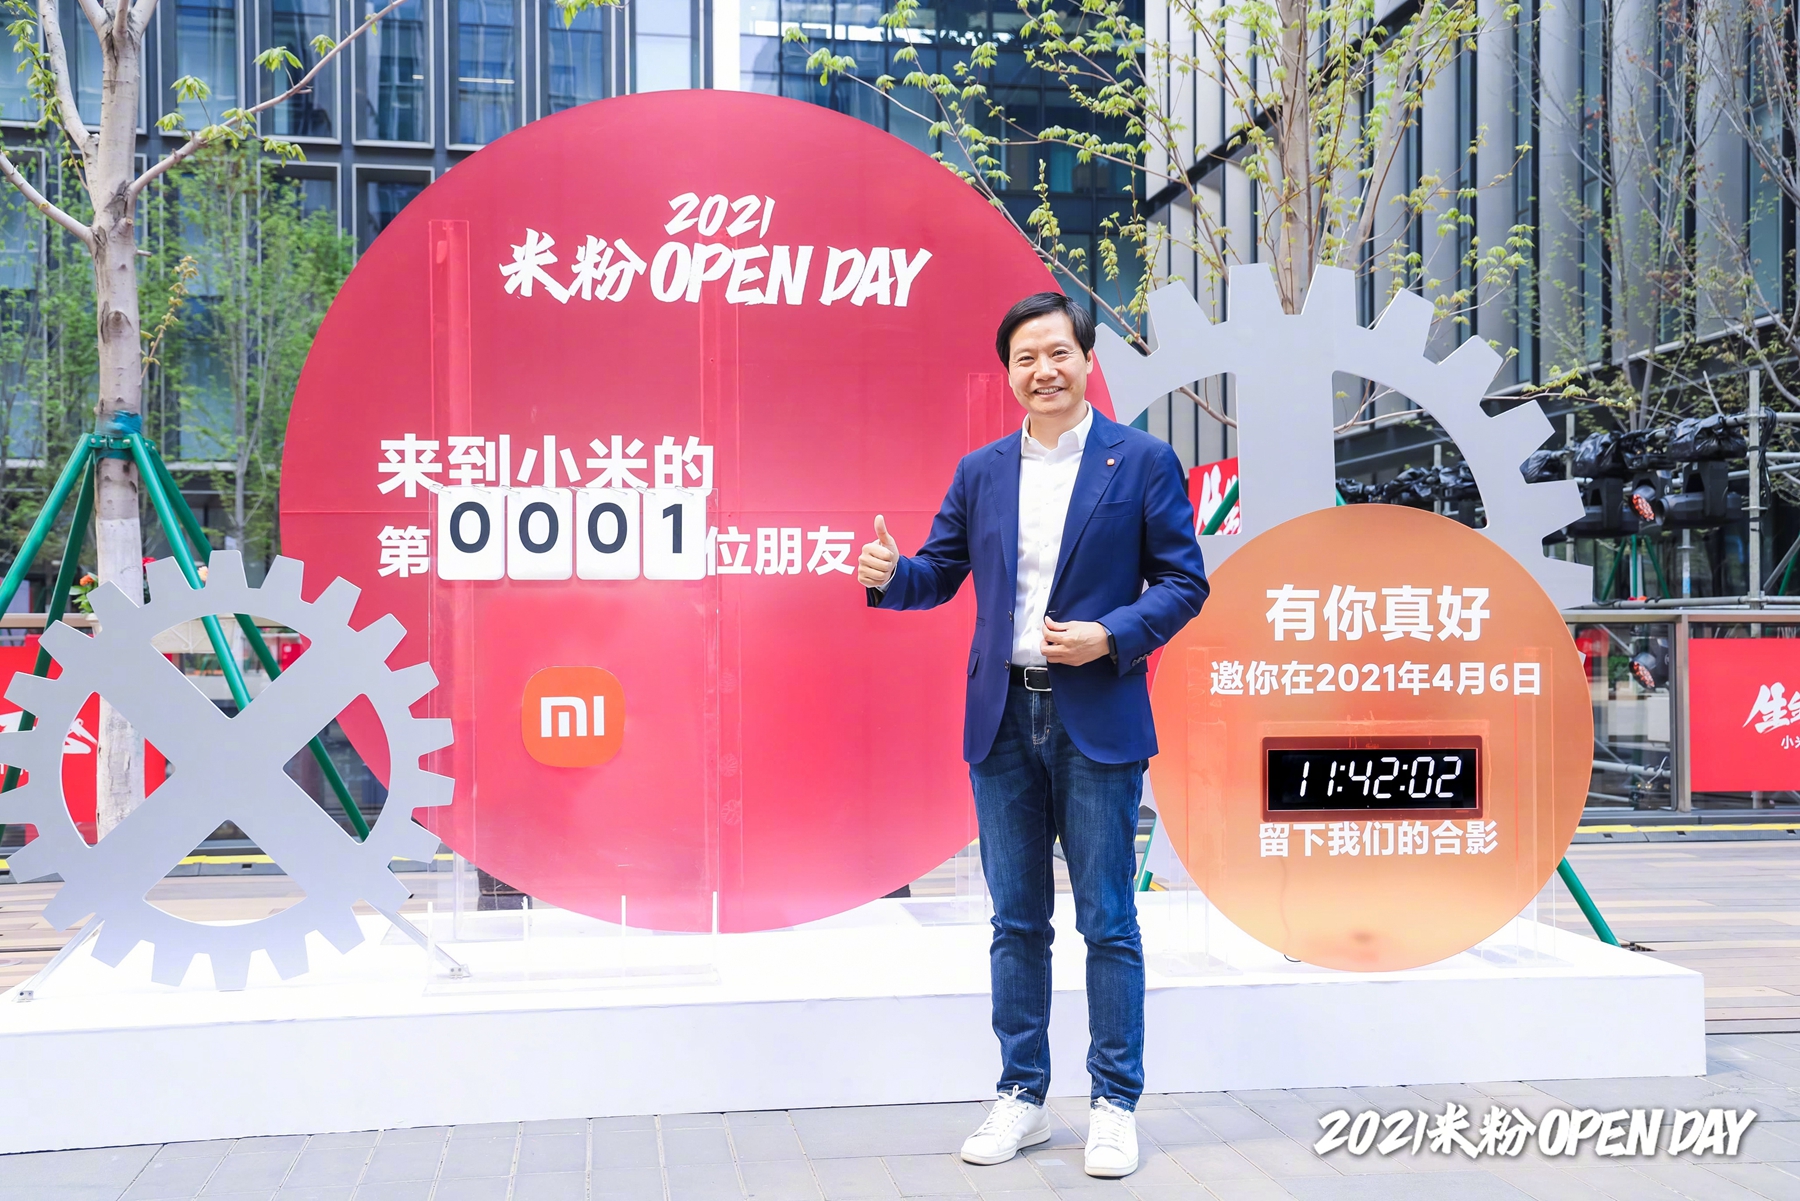 上海现小米汽车交付中心 已有展车到店 - Xiaomi 小米 - cnBeta.COM